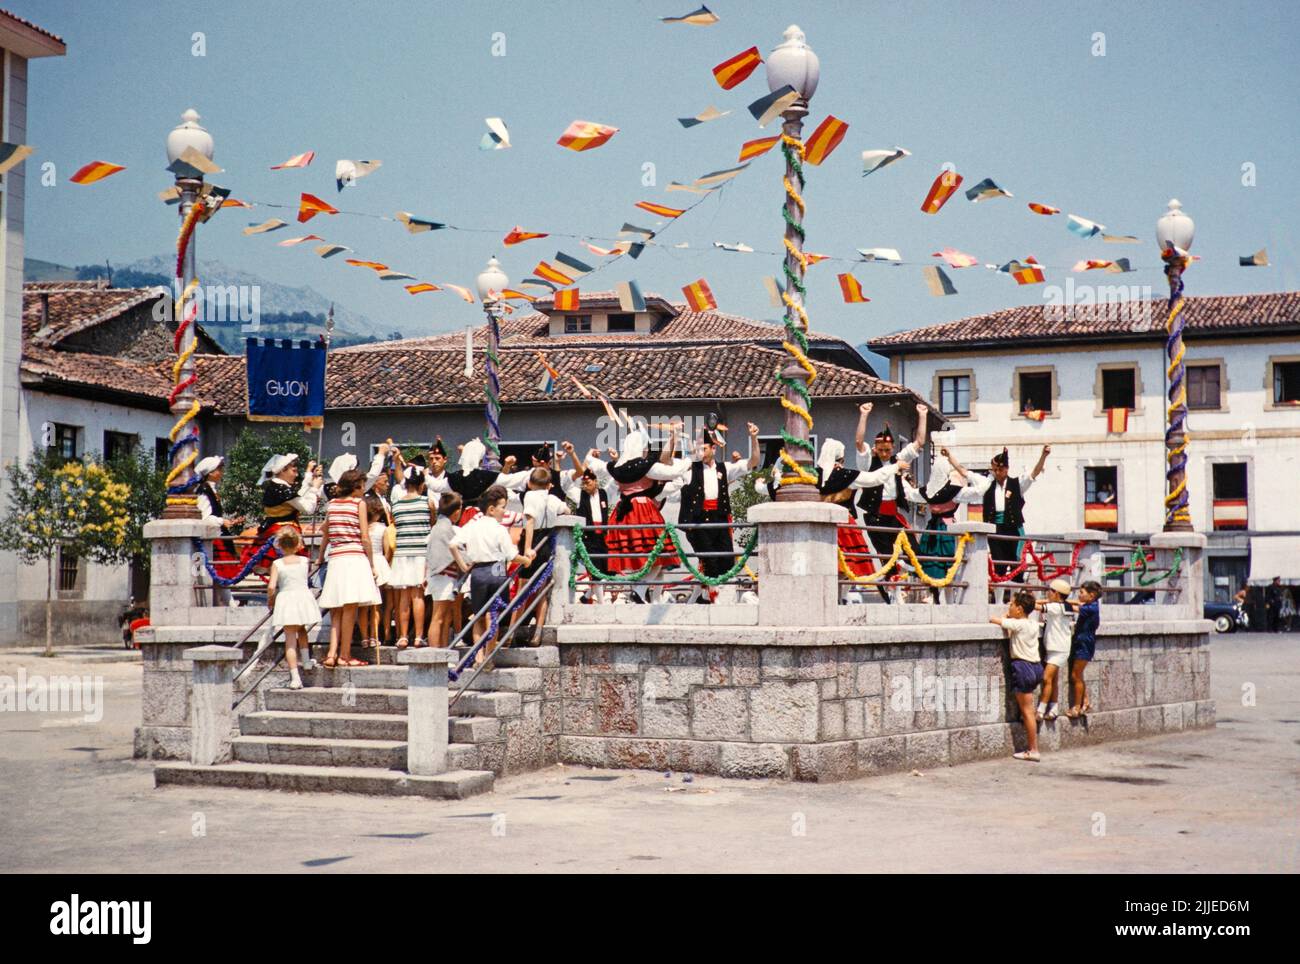 Grupo de danza folklórica asturiana tradicional de Gijón perfomr en el pueblo de Asturia, norte de España 1959 Foto de stock